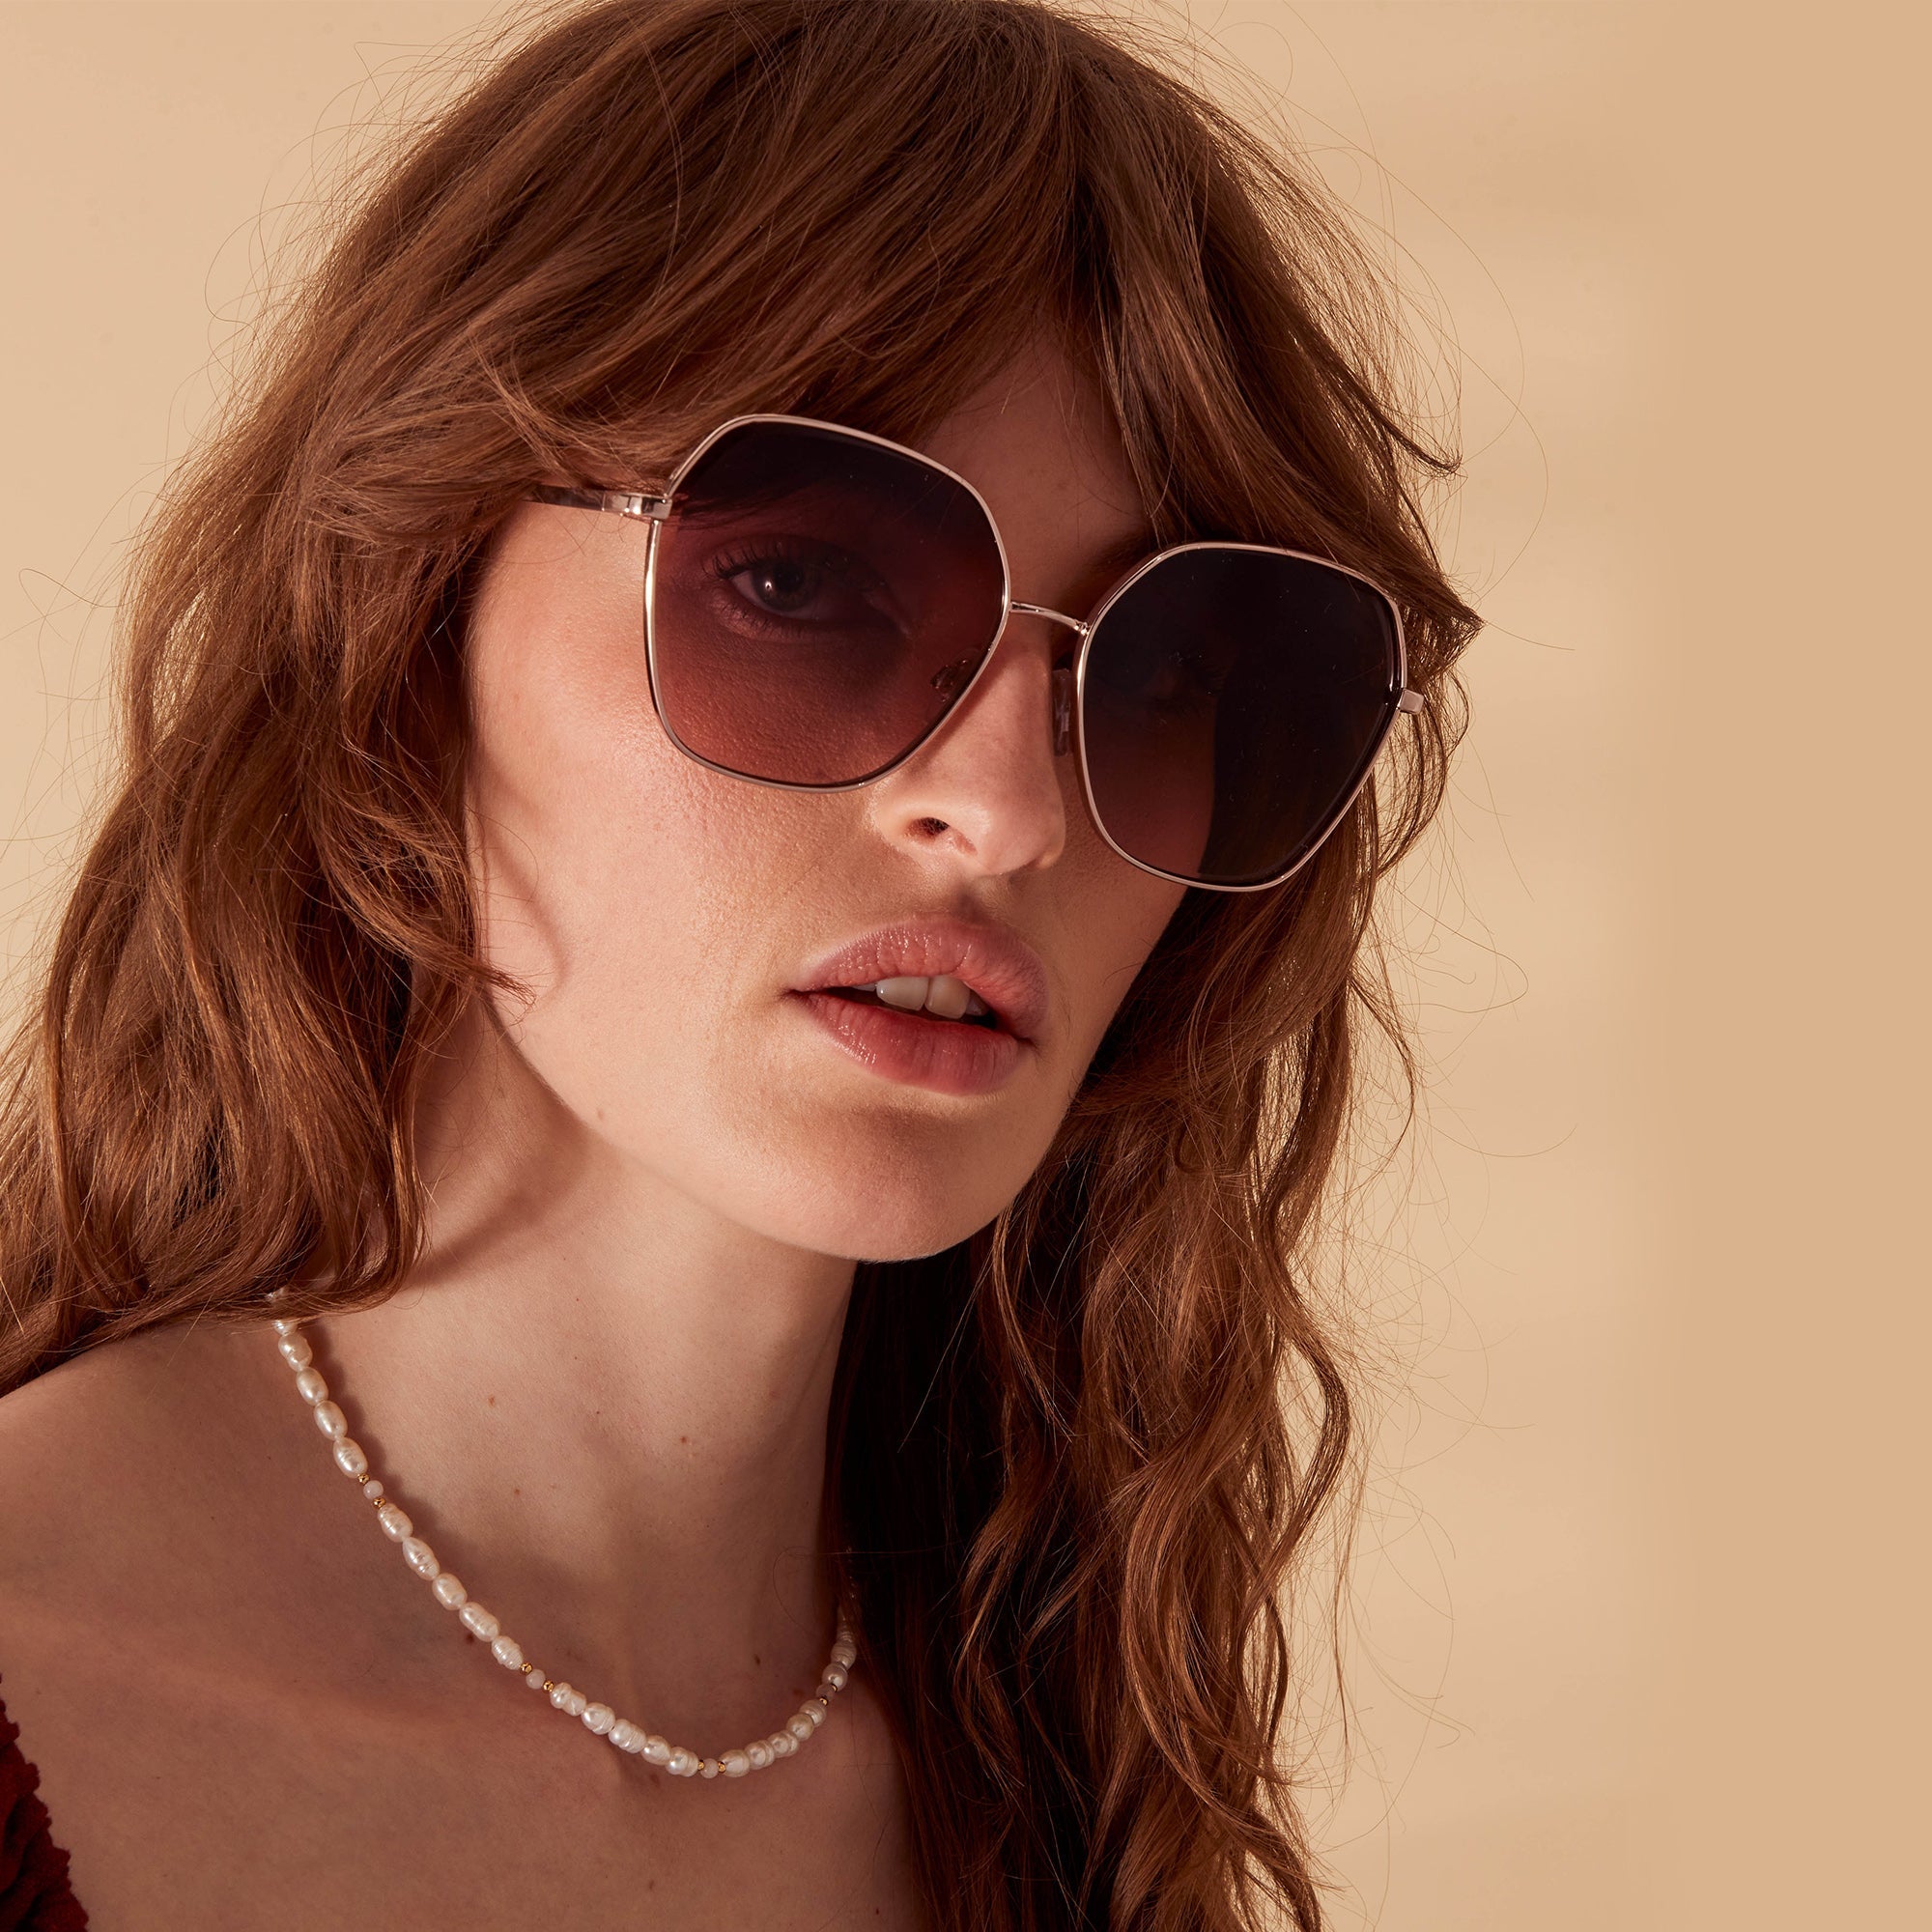 Accessorize London Women's Gold Metal Rim Square Sunglasses